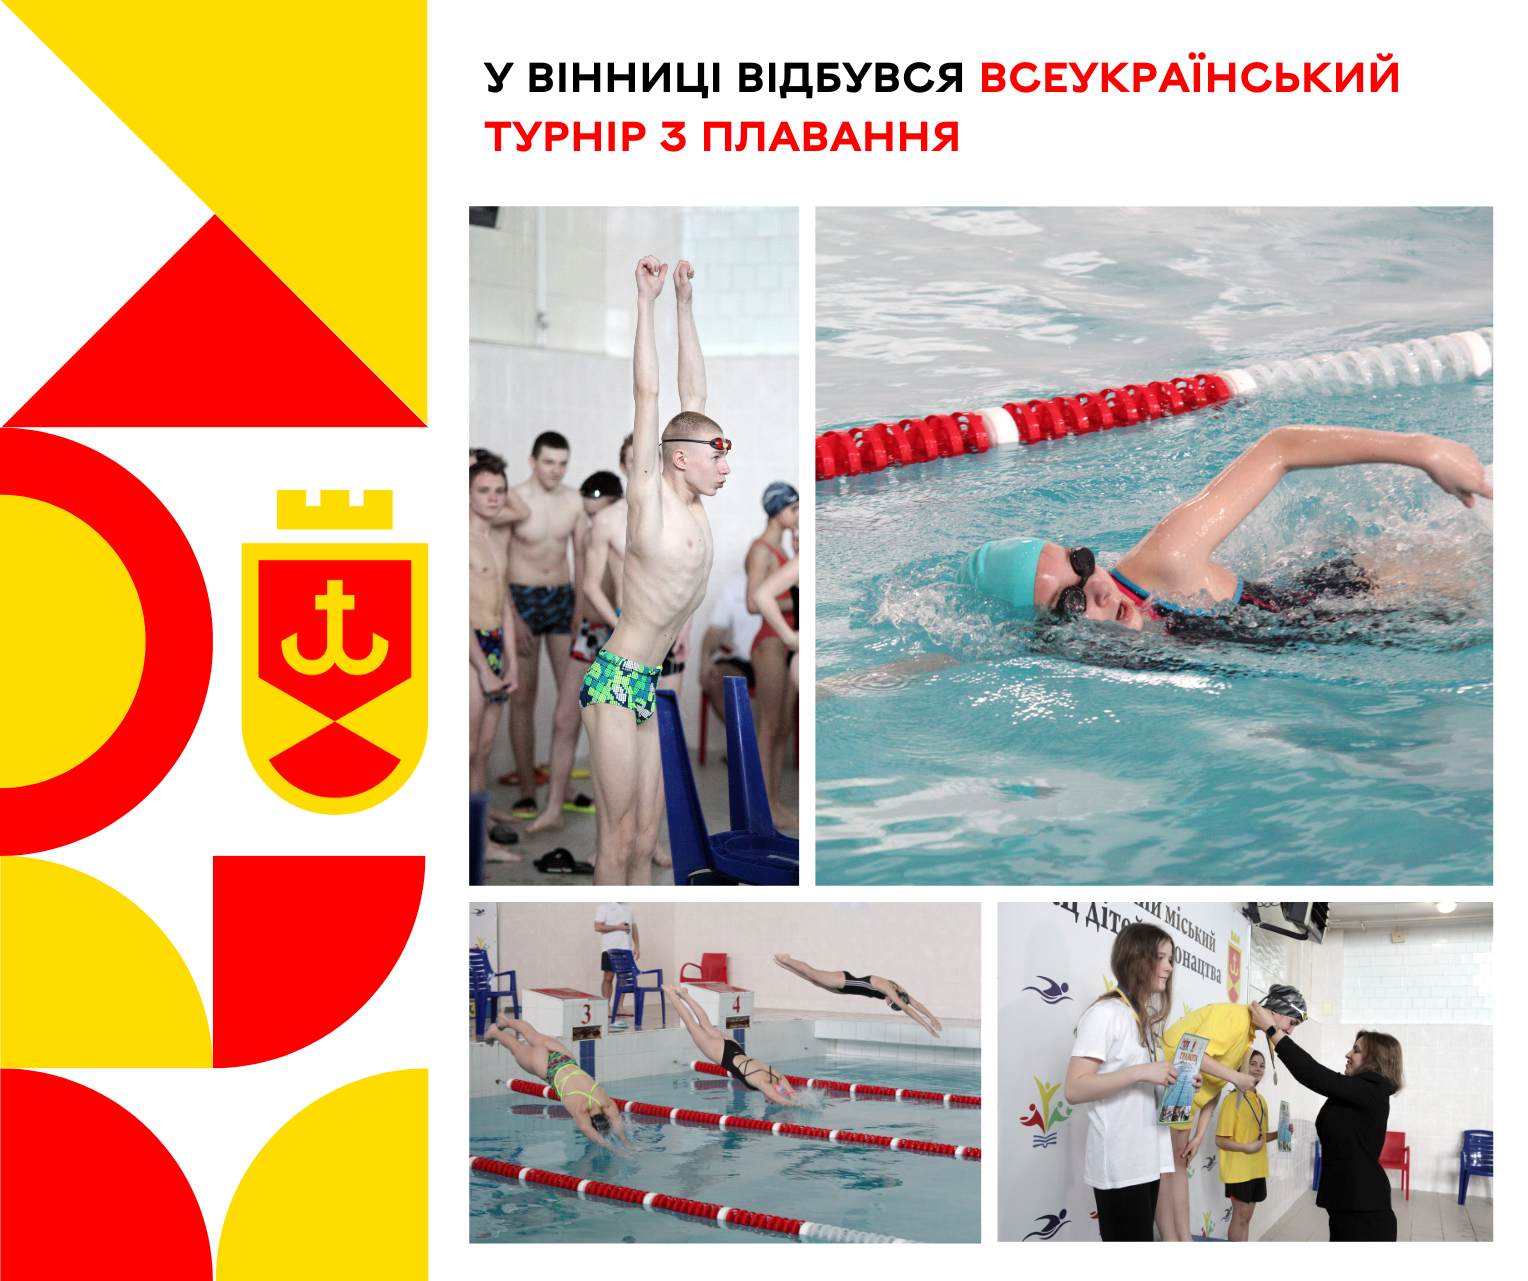 Всеукраїнський турнір з плавання відбувся у Вінниці: деталі